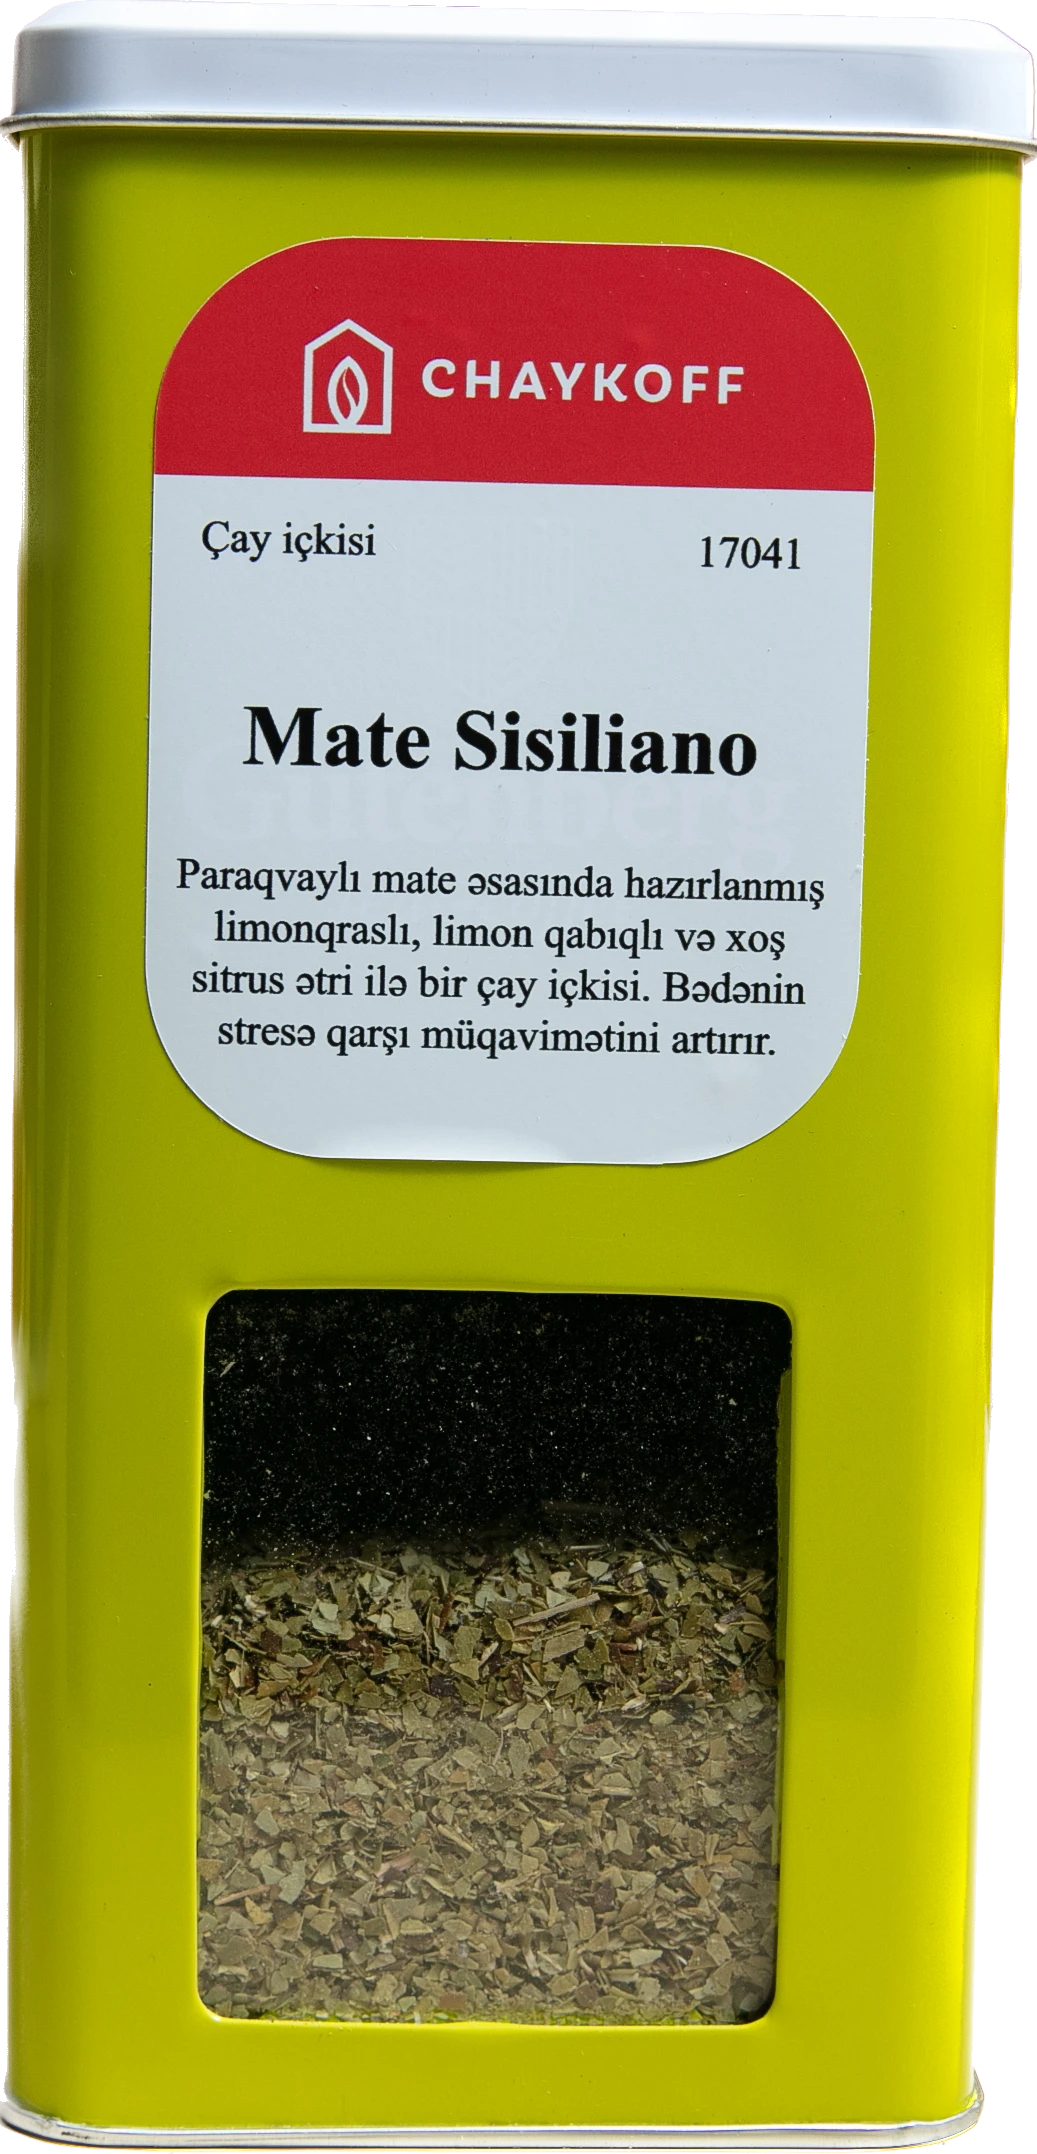 Mate Sisiliano Çay İçkisi (250 qr)